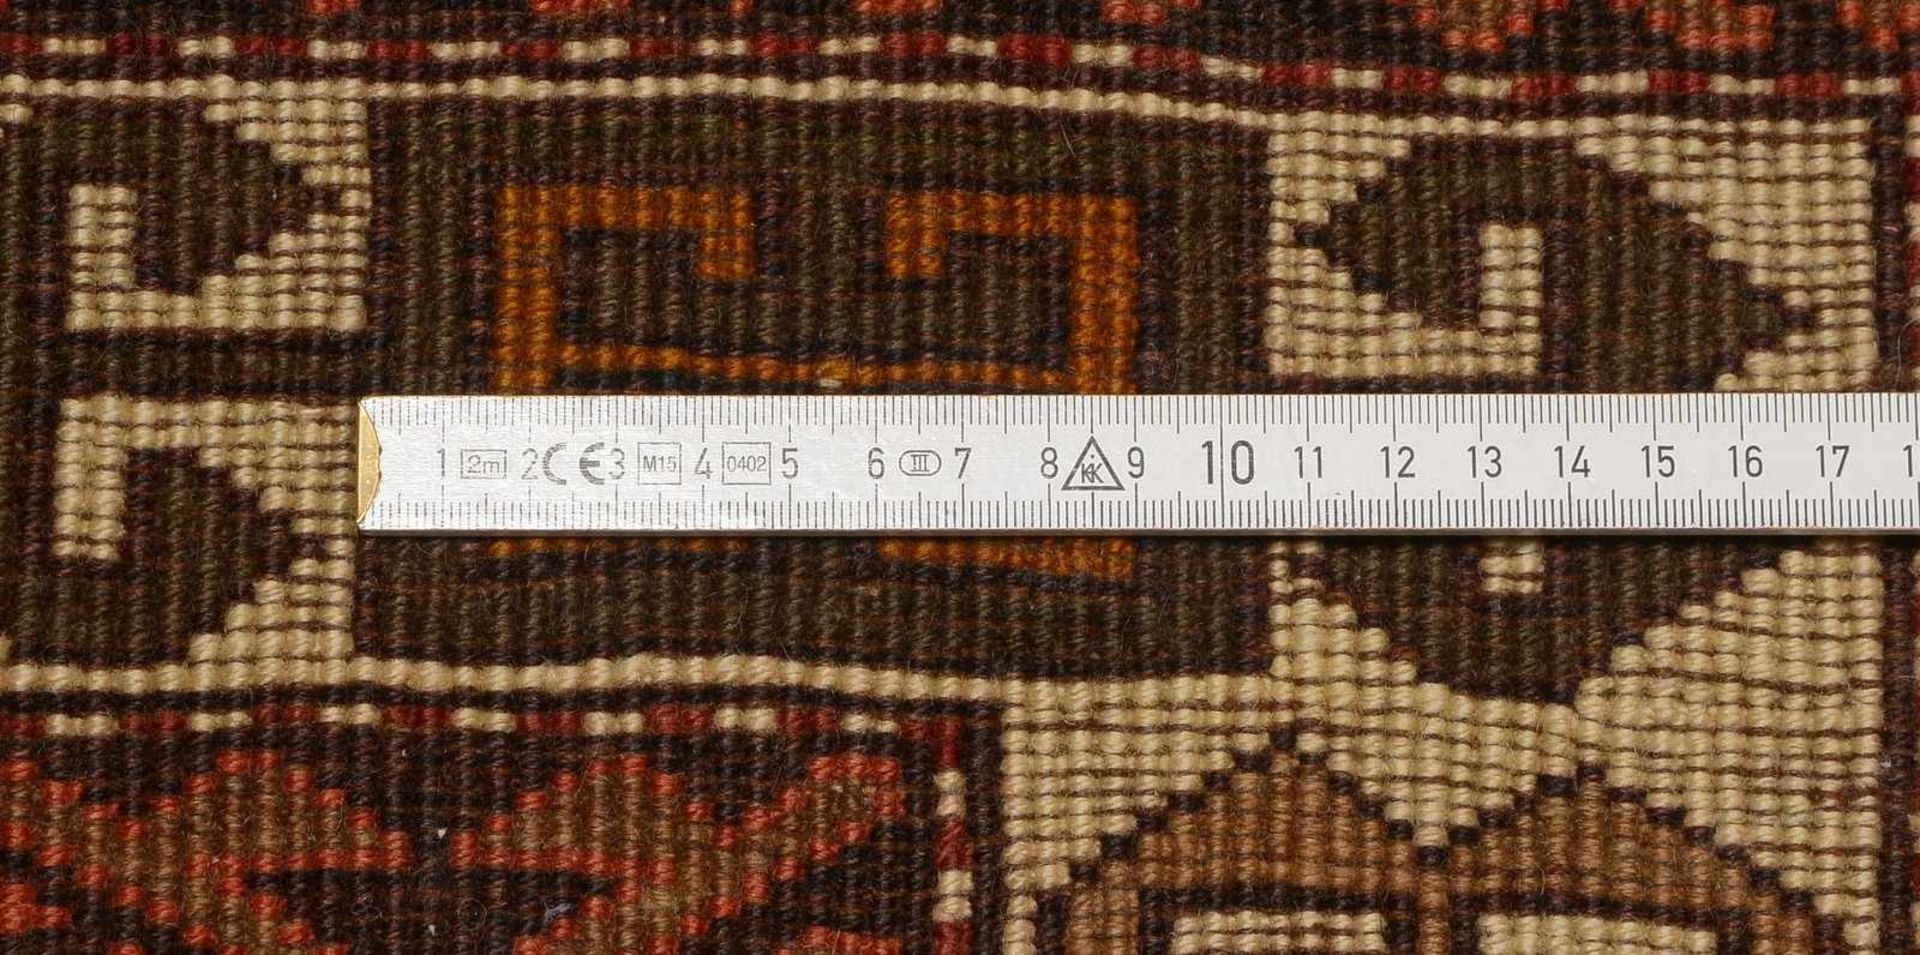 Kars Kazak-Orientteppich, Flor in sehr gutem Zustand, sauber; Maße 251 x 172 cm (mit Zertifikat, - Bild 2 aus 2